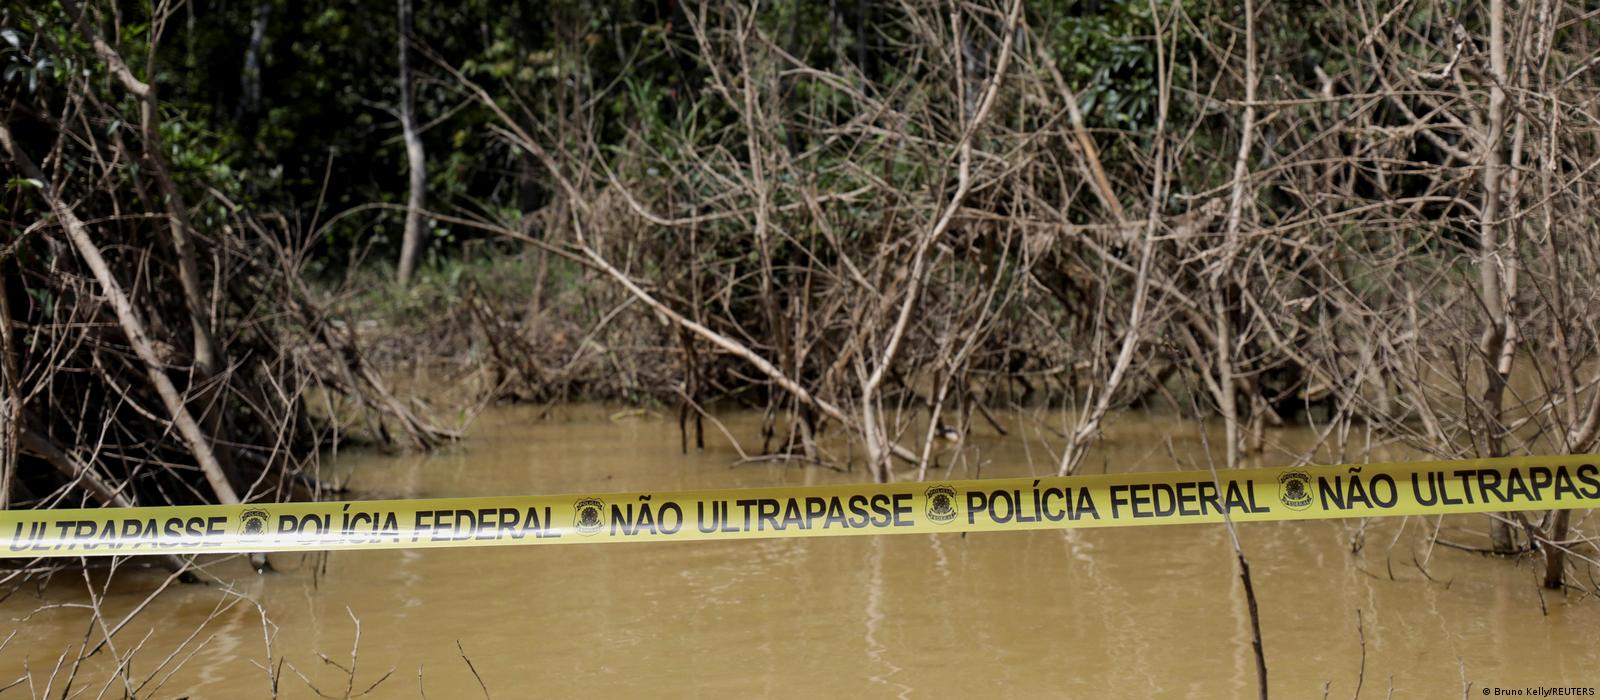 Faixa de "Não ultrapasse" da Polícia Federal em área de rio e floresta